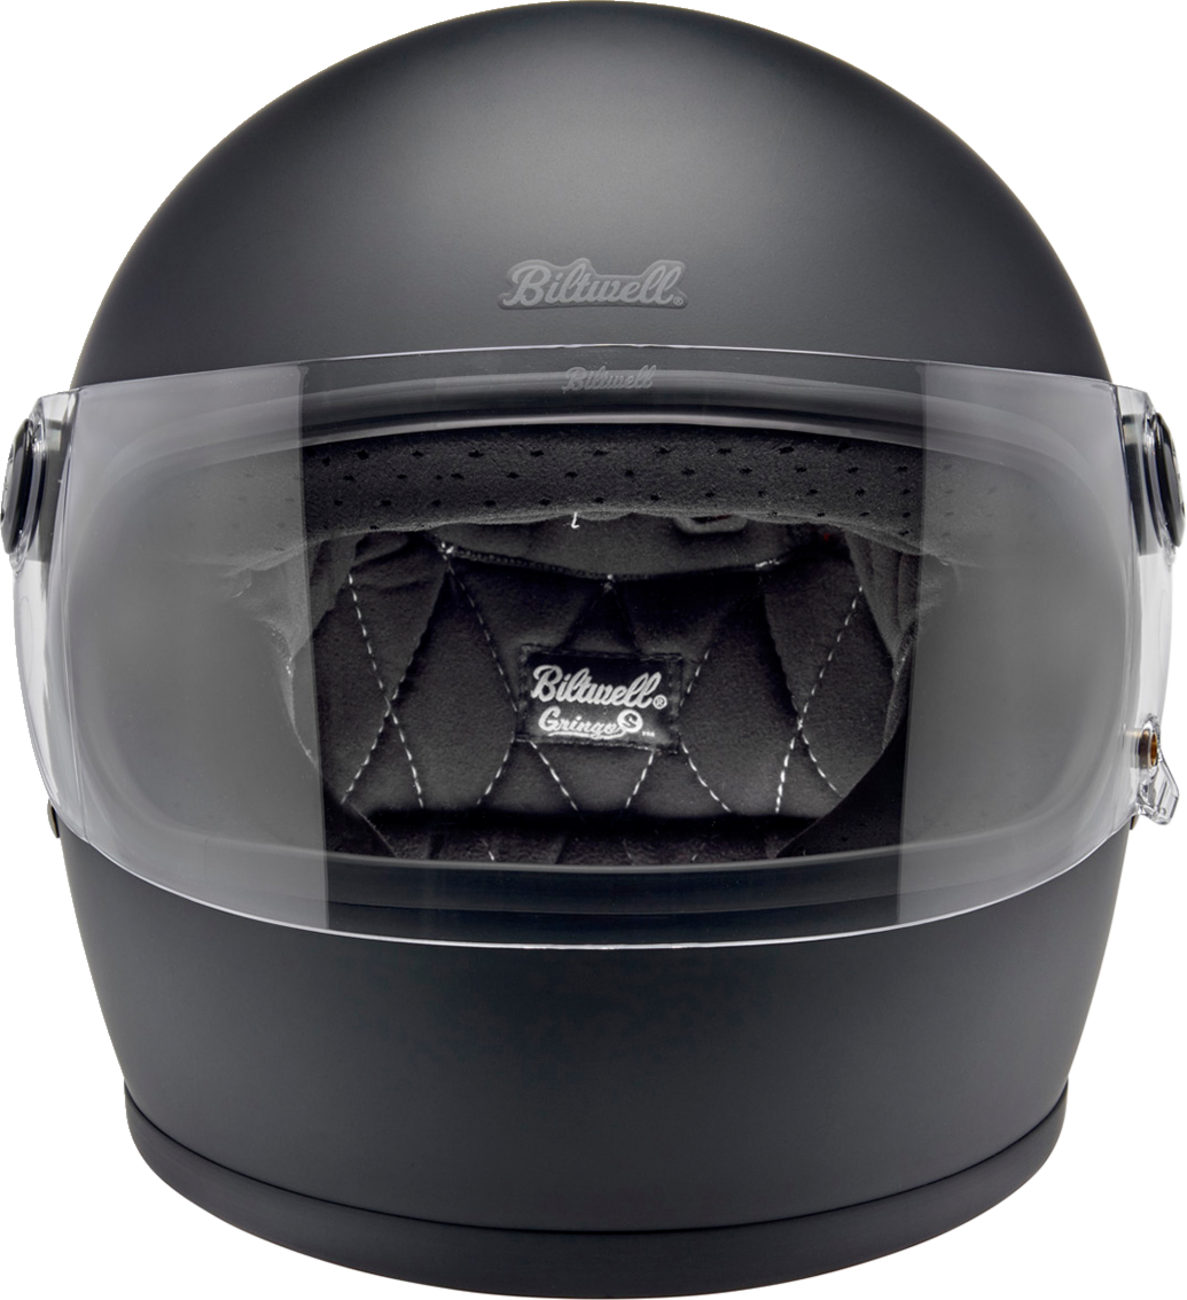 BILTWELL Gringo S Helmet - Flat Black - XS 1003-201-501